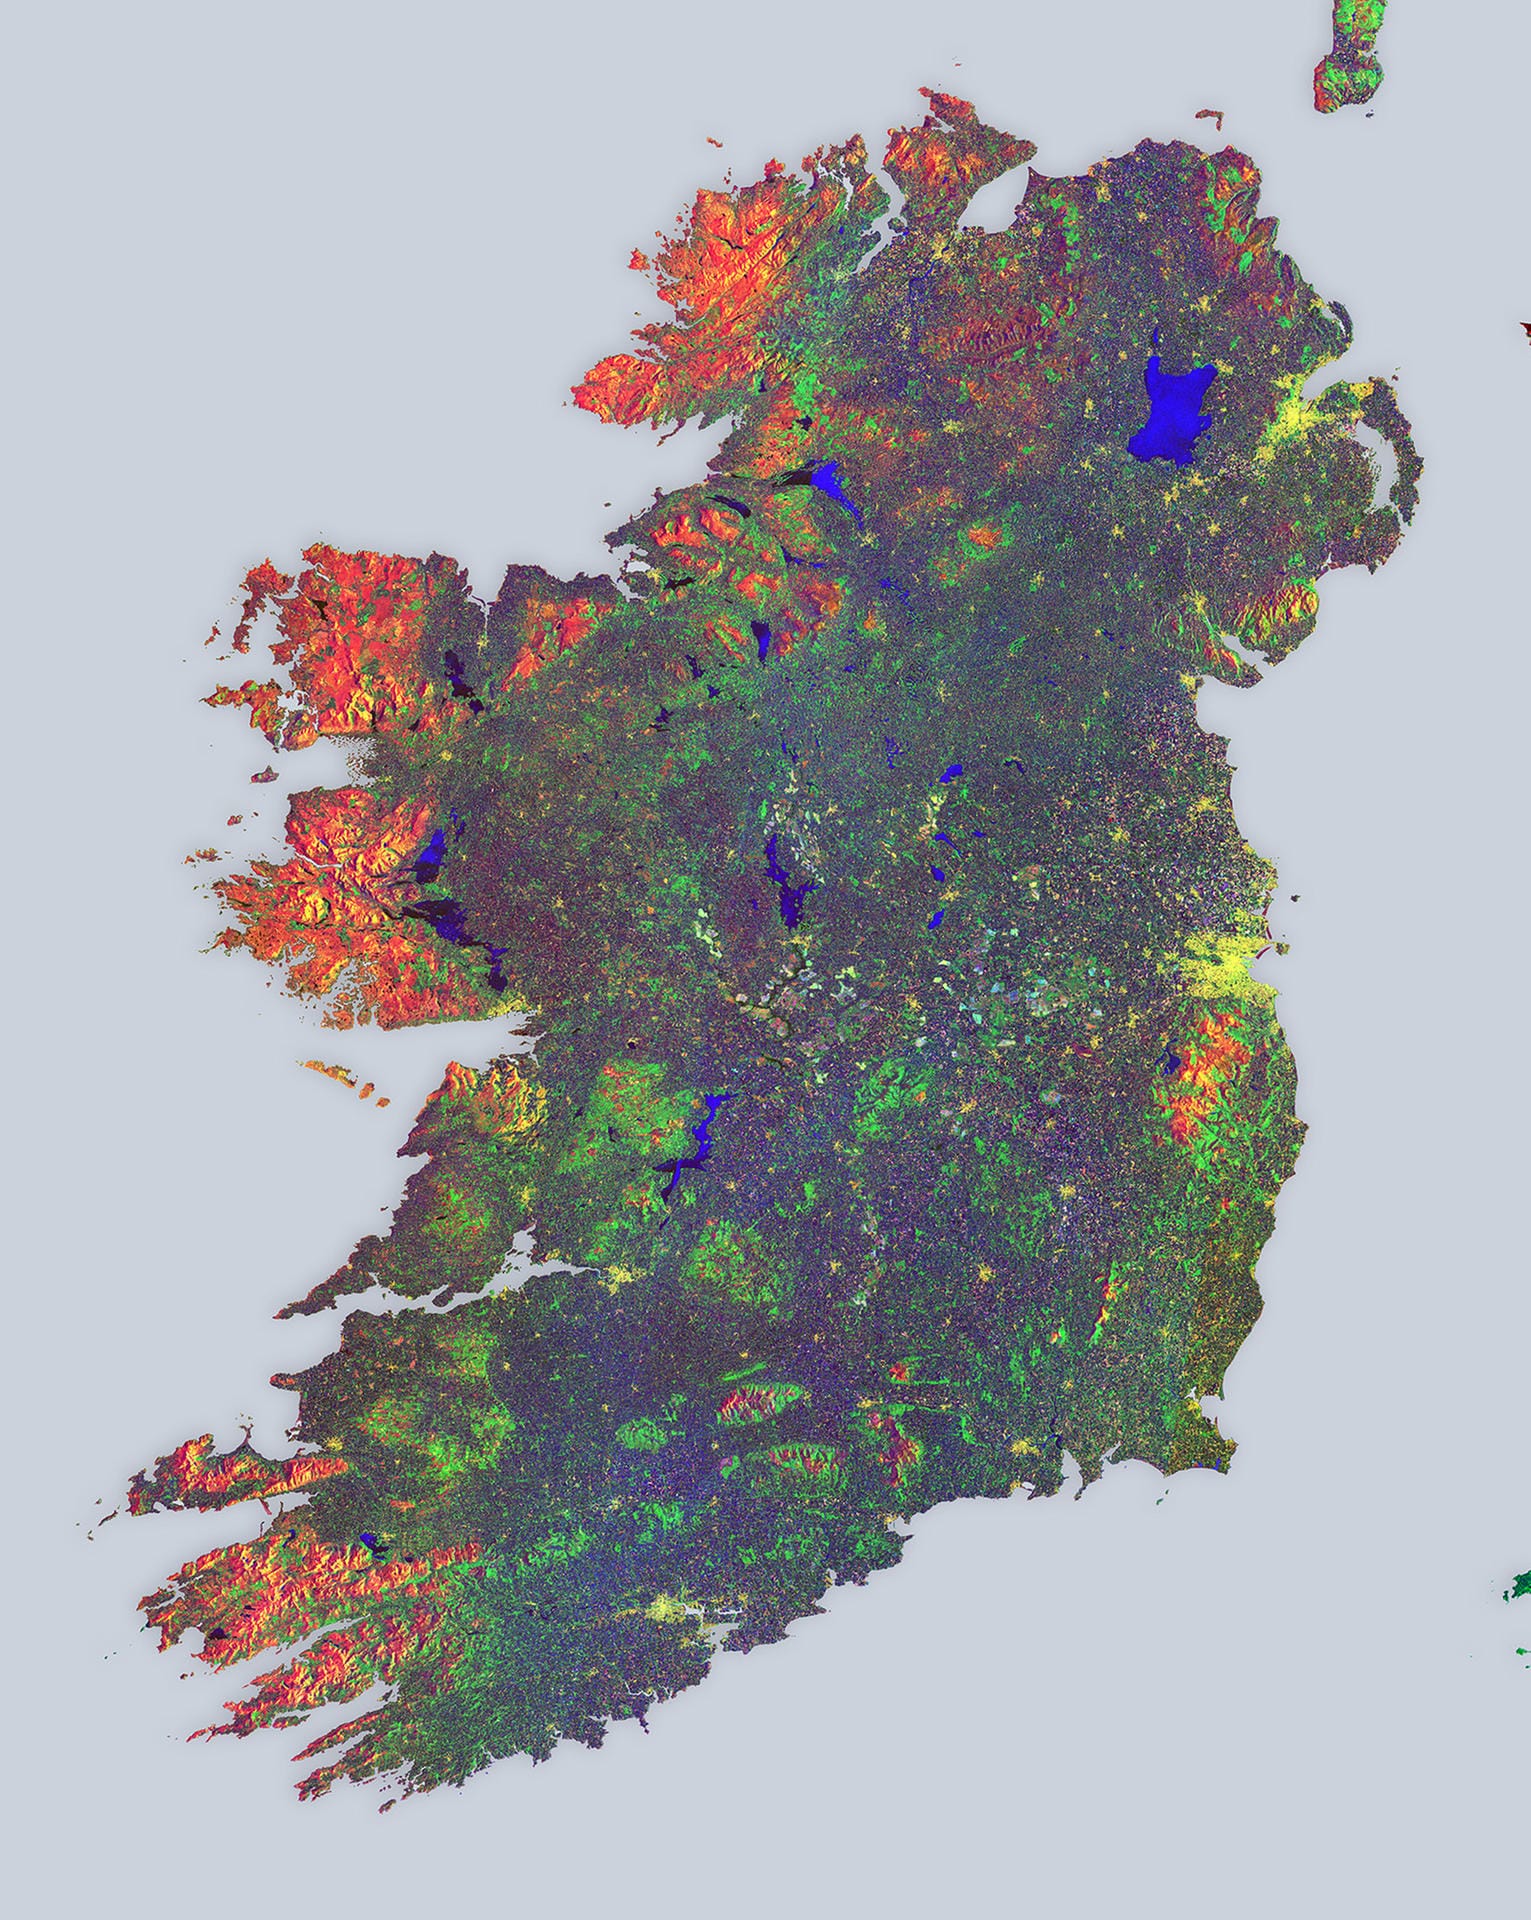 Das Satellitenbild der Woche zeigt eine Farbbild-Komposition aus 16 Radaraufnahmen von Irland, die über einen Zeitraum von zwölf Tagen entstanden. Die verschiedenen Farben geben Aufschluss über die Beschaffenheit der grünen Insel. Gewässer sind blau dargestellt. Rot und orange stehen für Felsformationen oder andere, unveränderliche Landstriche. Gelb leuchtet die Hauptstadt Dublin rechts in der Bildmitte. Weitere gelbe Spots stehen für Farmen. Bewirtschaftete Felder und Waldgebiete sind grün dargestellt.